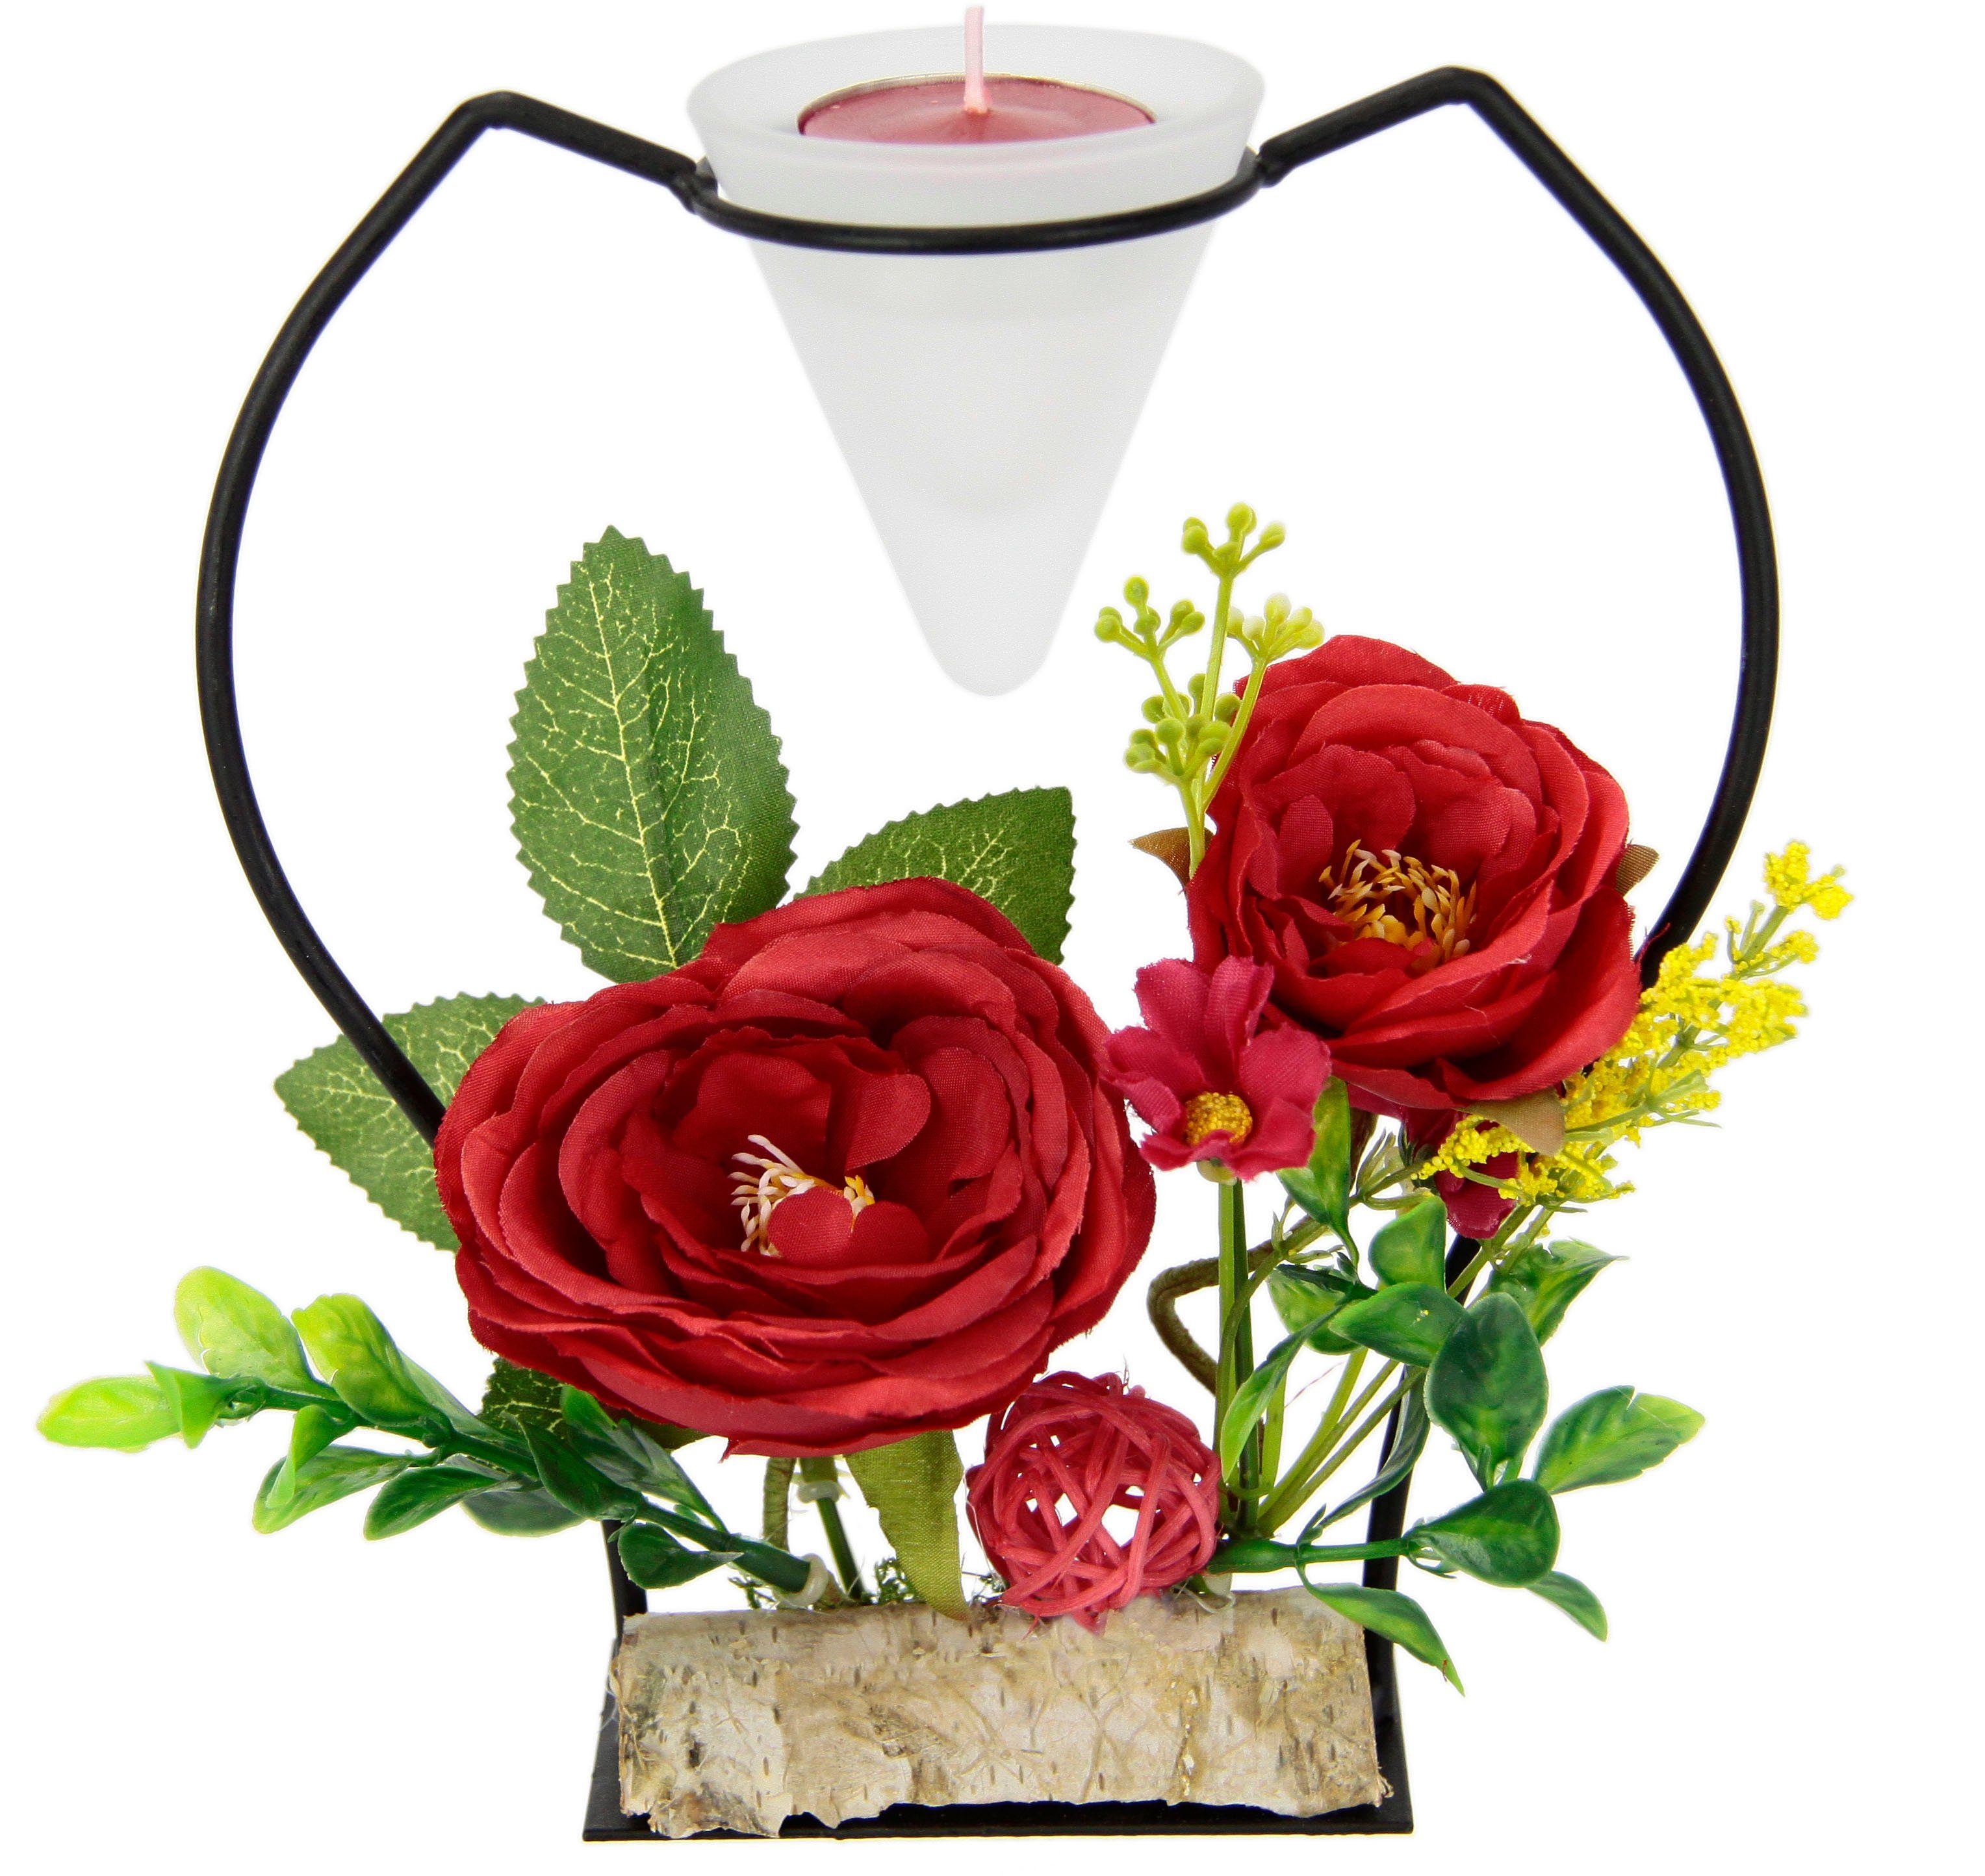 I.GE.A. Teelichthalter Glaseinsatz Metall rot Rose, 3D Kunstblumen Kerzenständer Advent Teelichtkerze